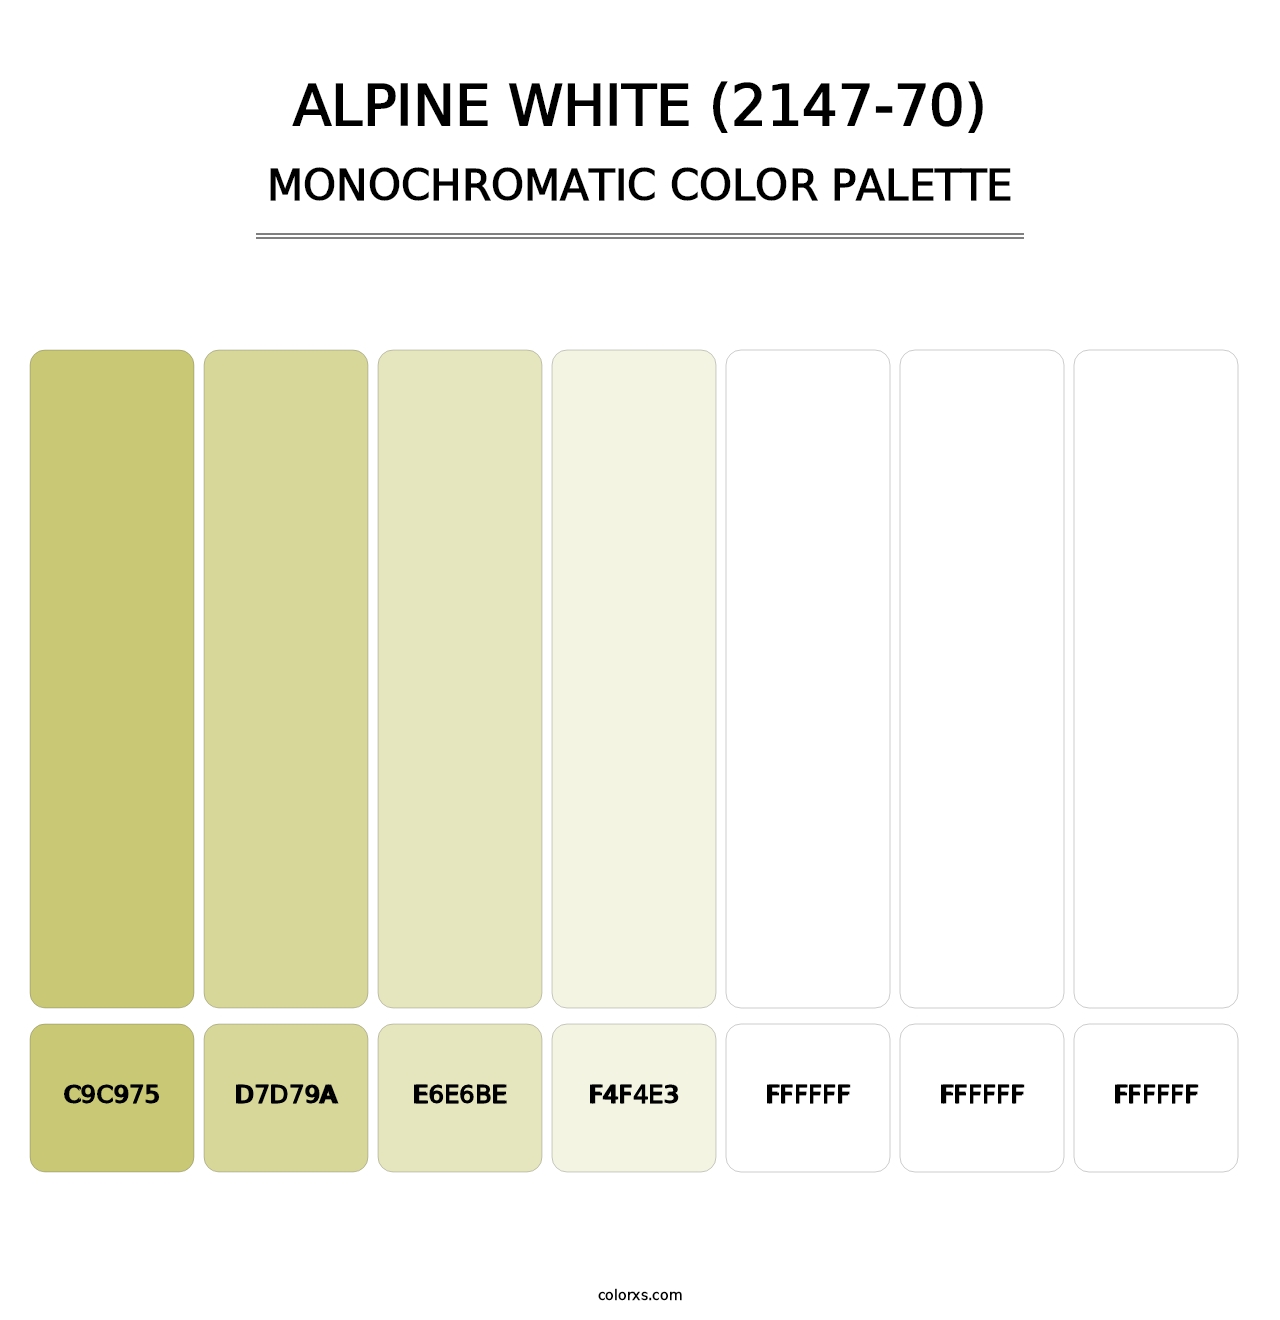 Alpine White (2147-70) - Monochromatic Color Palette